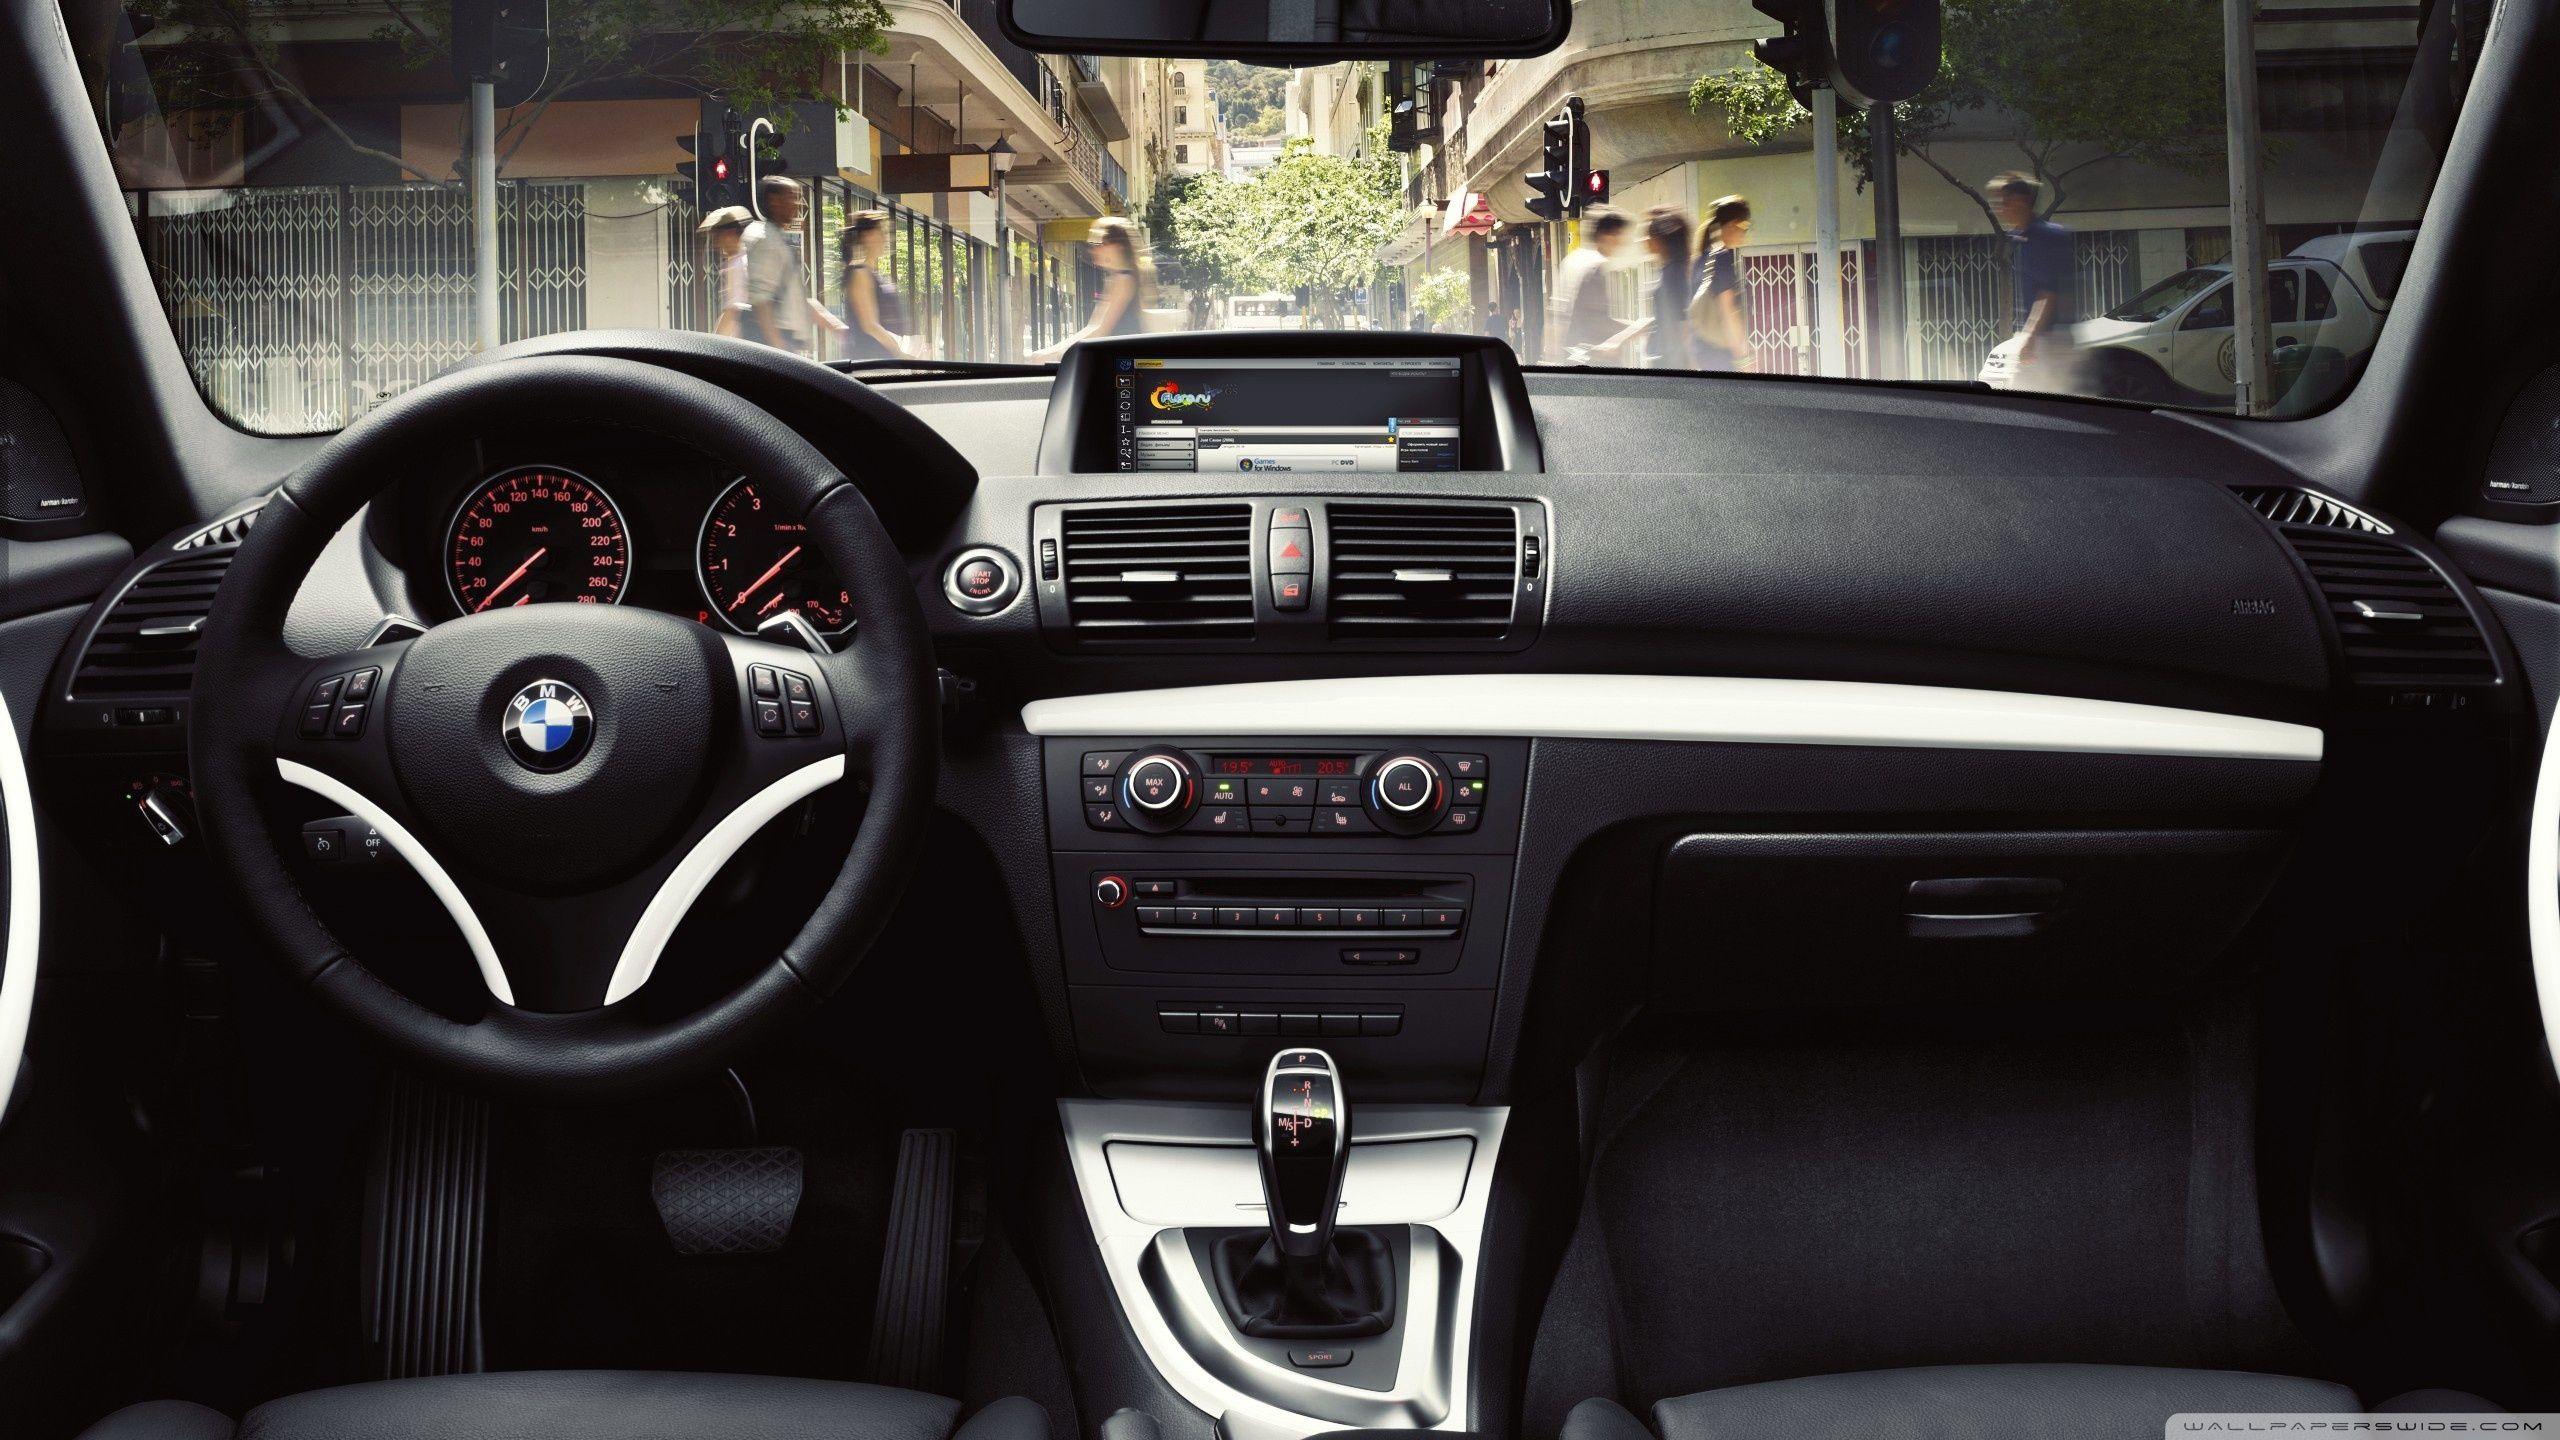 BMW Interior HD desktop wallpaper, Widescreen, High Definition